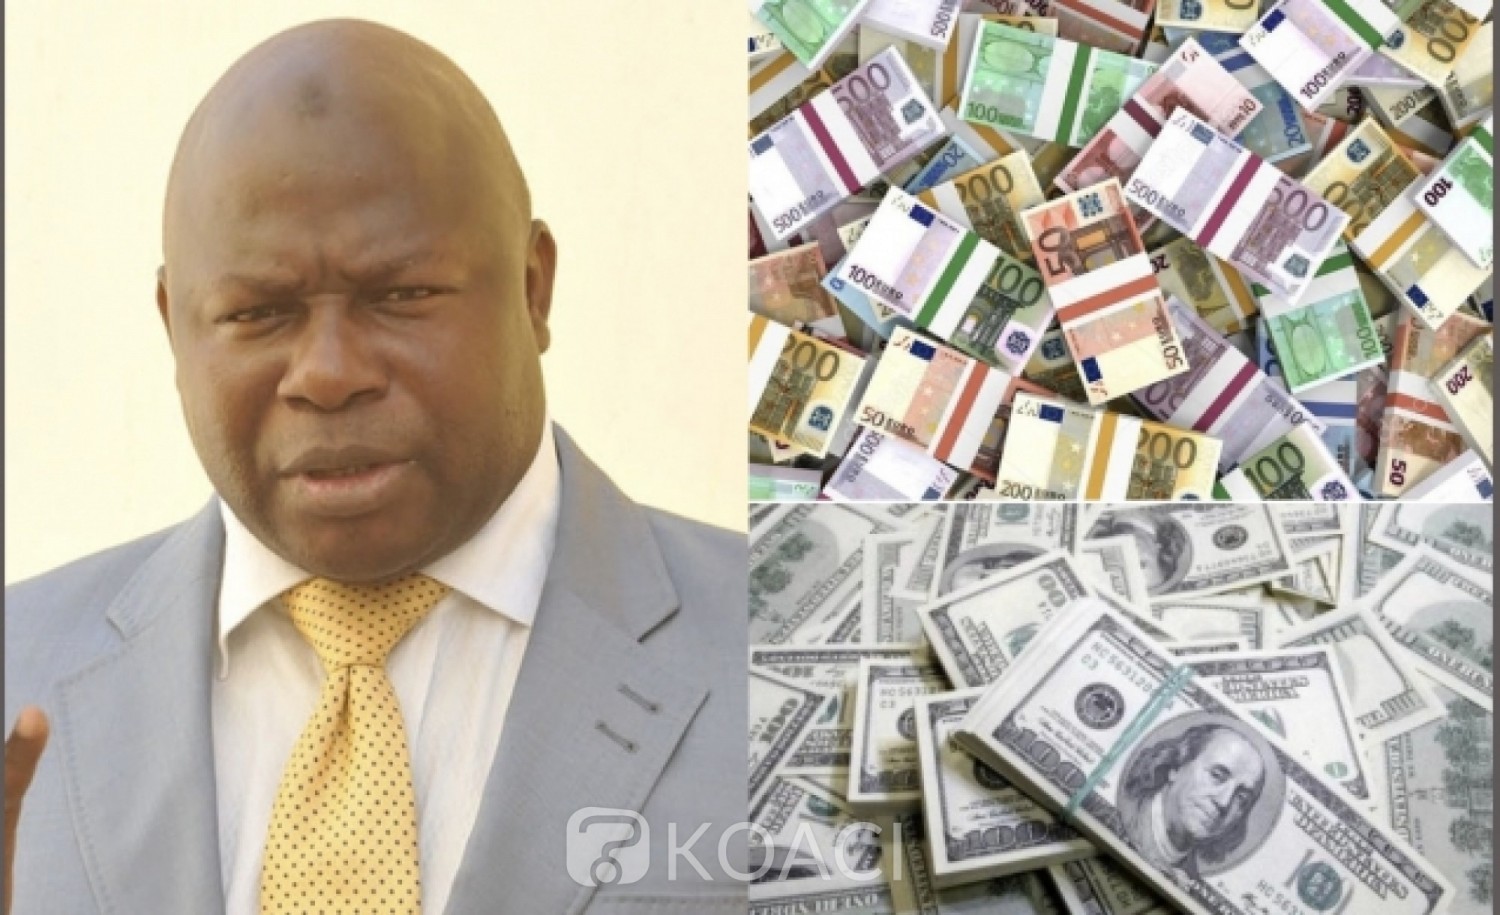 Sénégal: Affaires des faux billets, l'ex député envoyé en prison… ce qu'il risque